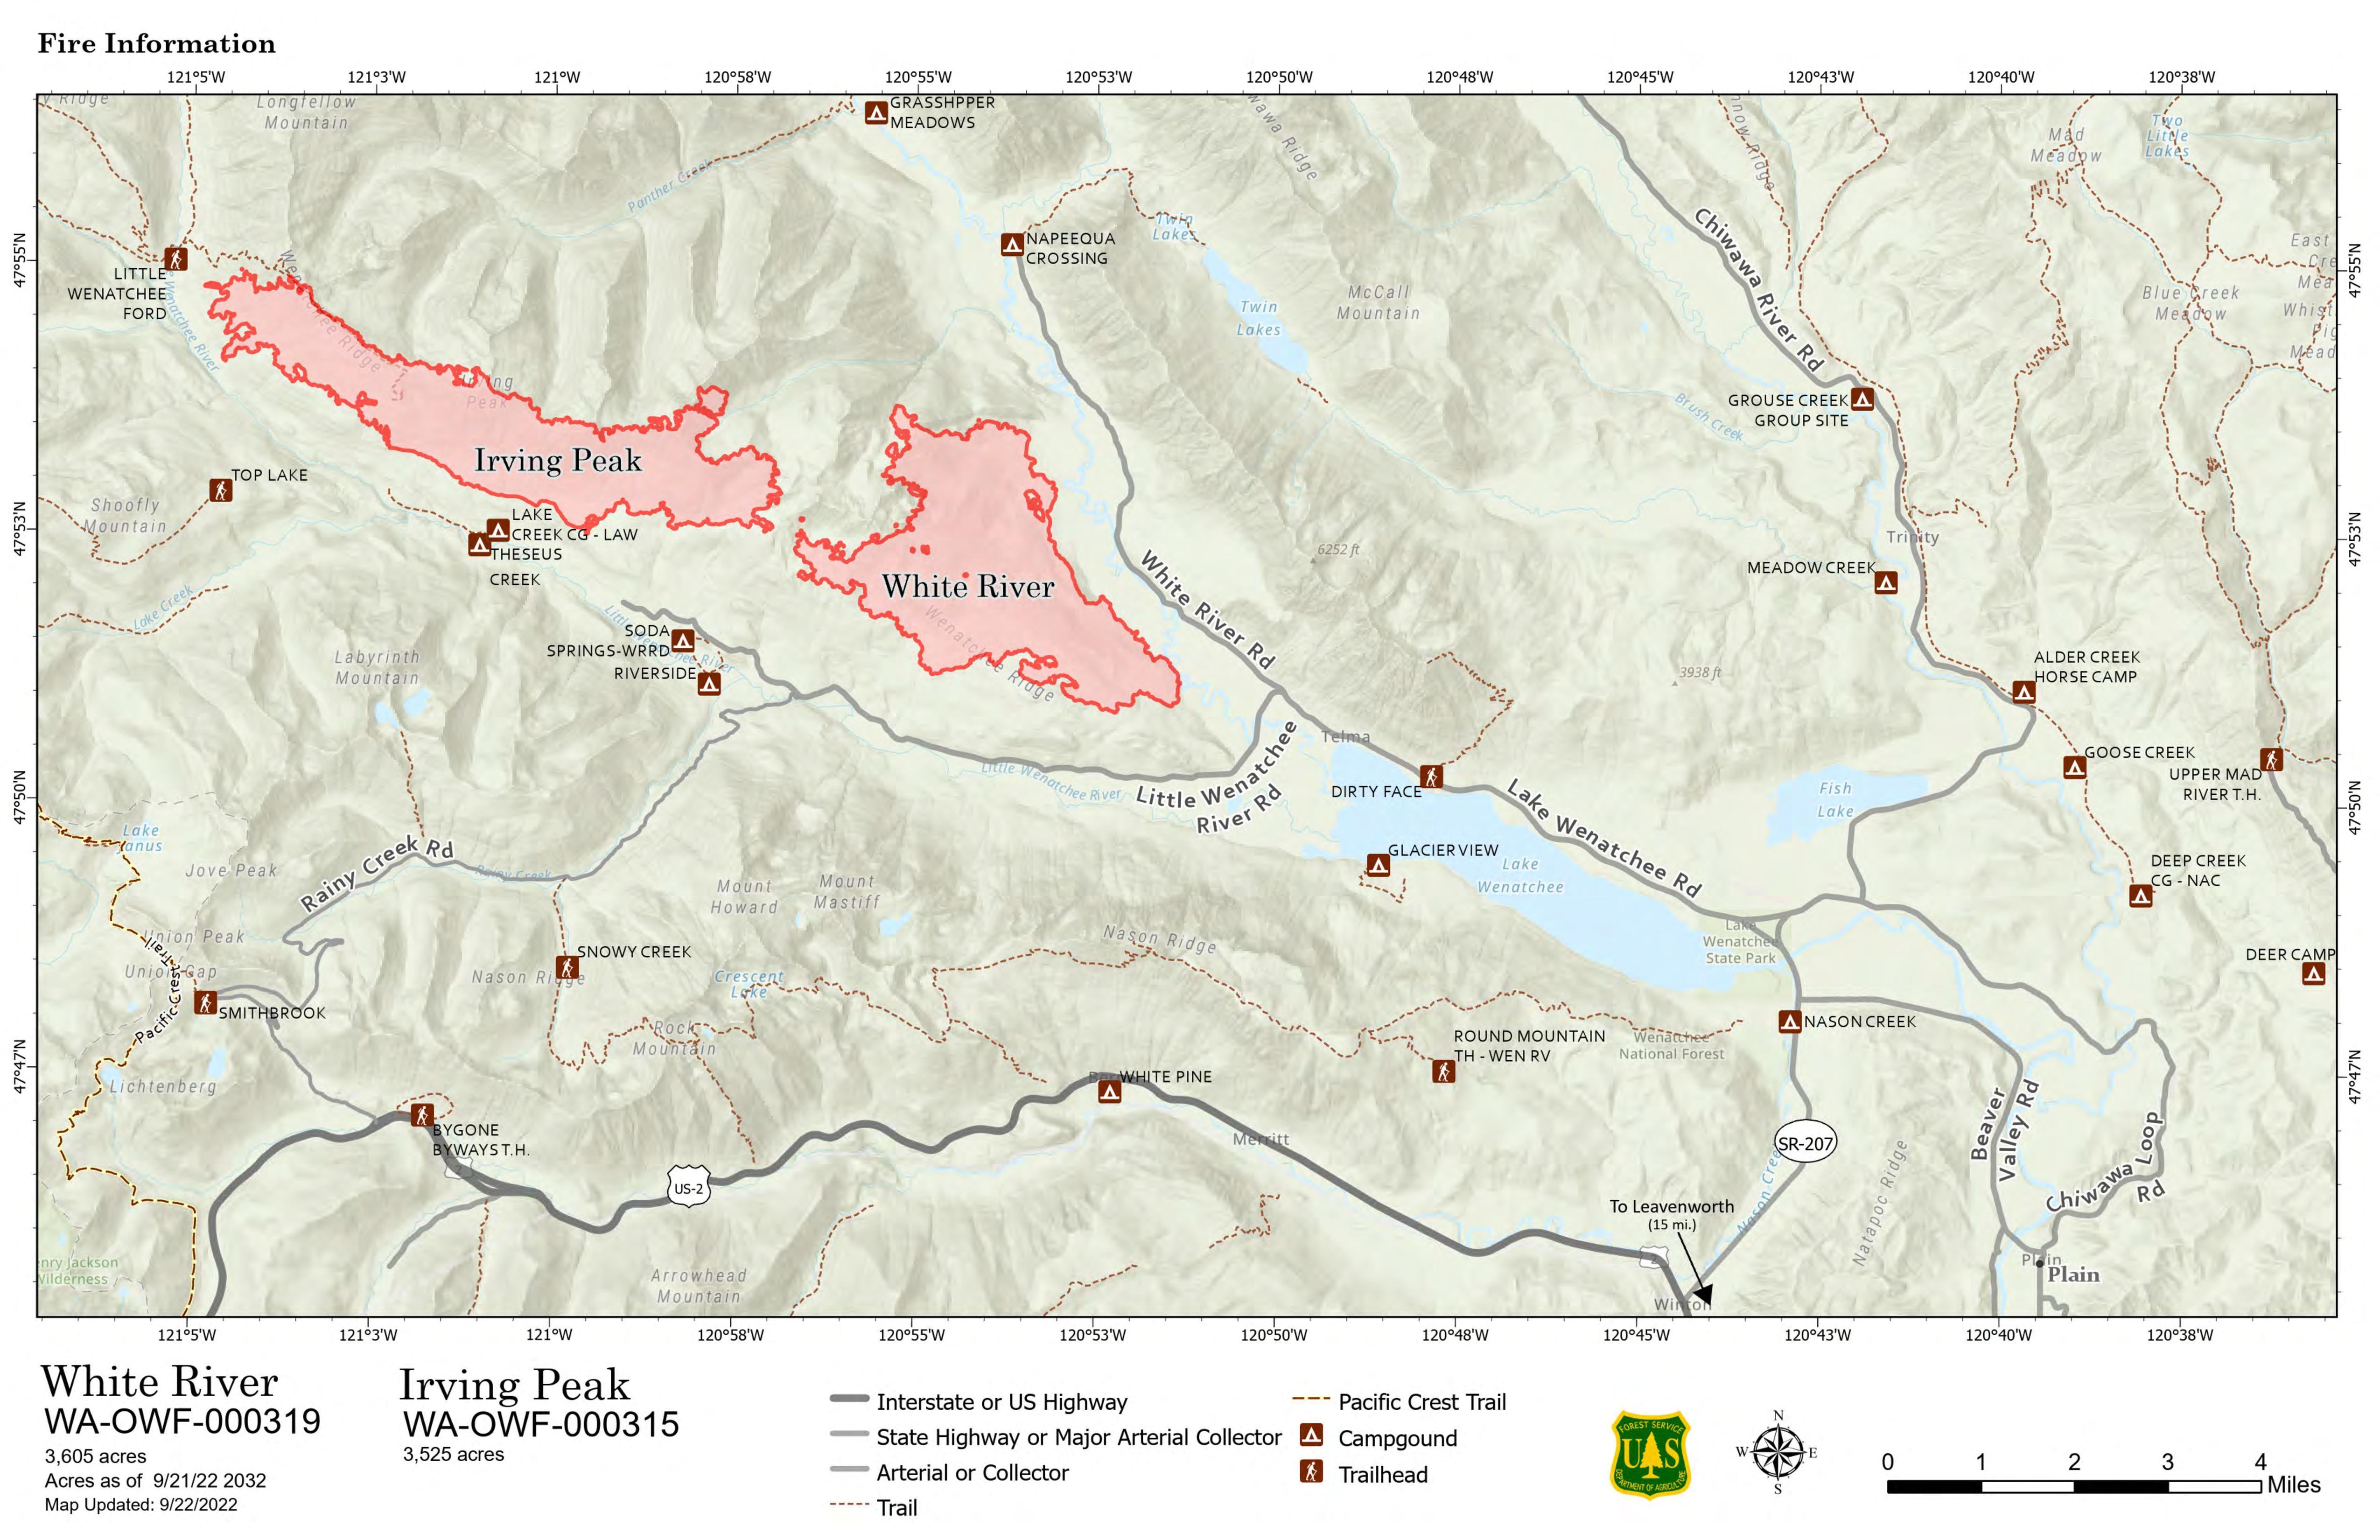 White River & Irving Peak Fire Map Sept 22